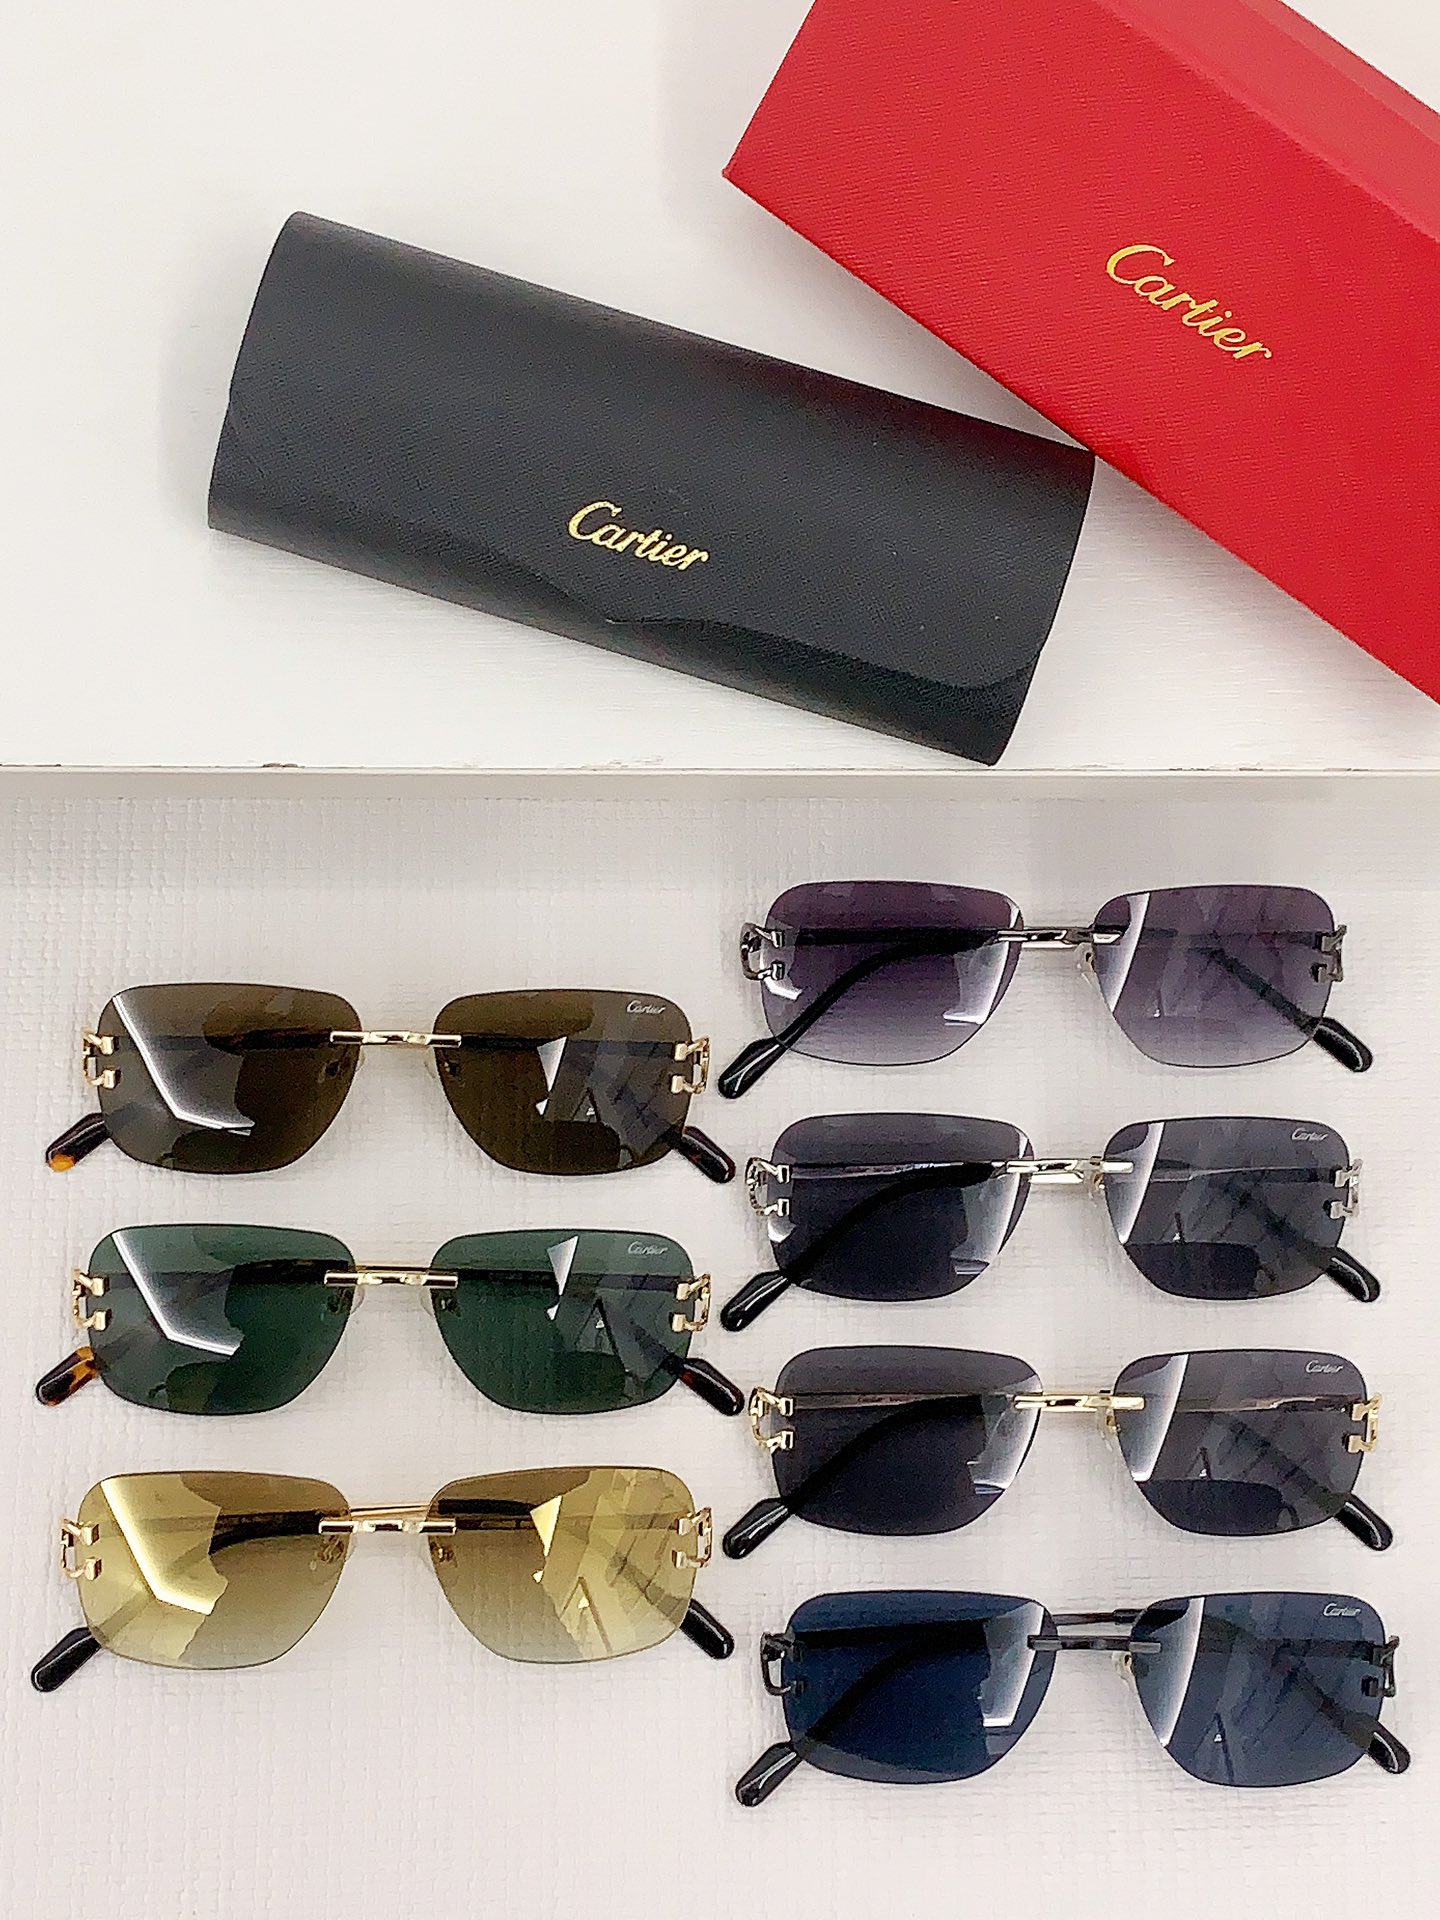 Cartier卡地亚金属材质无框男女通用太阳眼镜